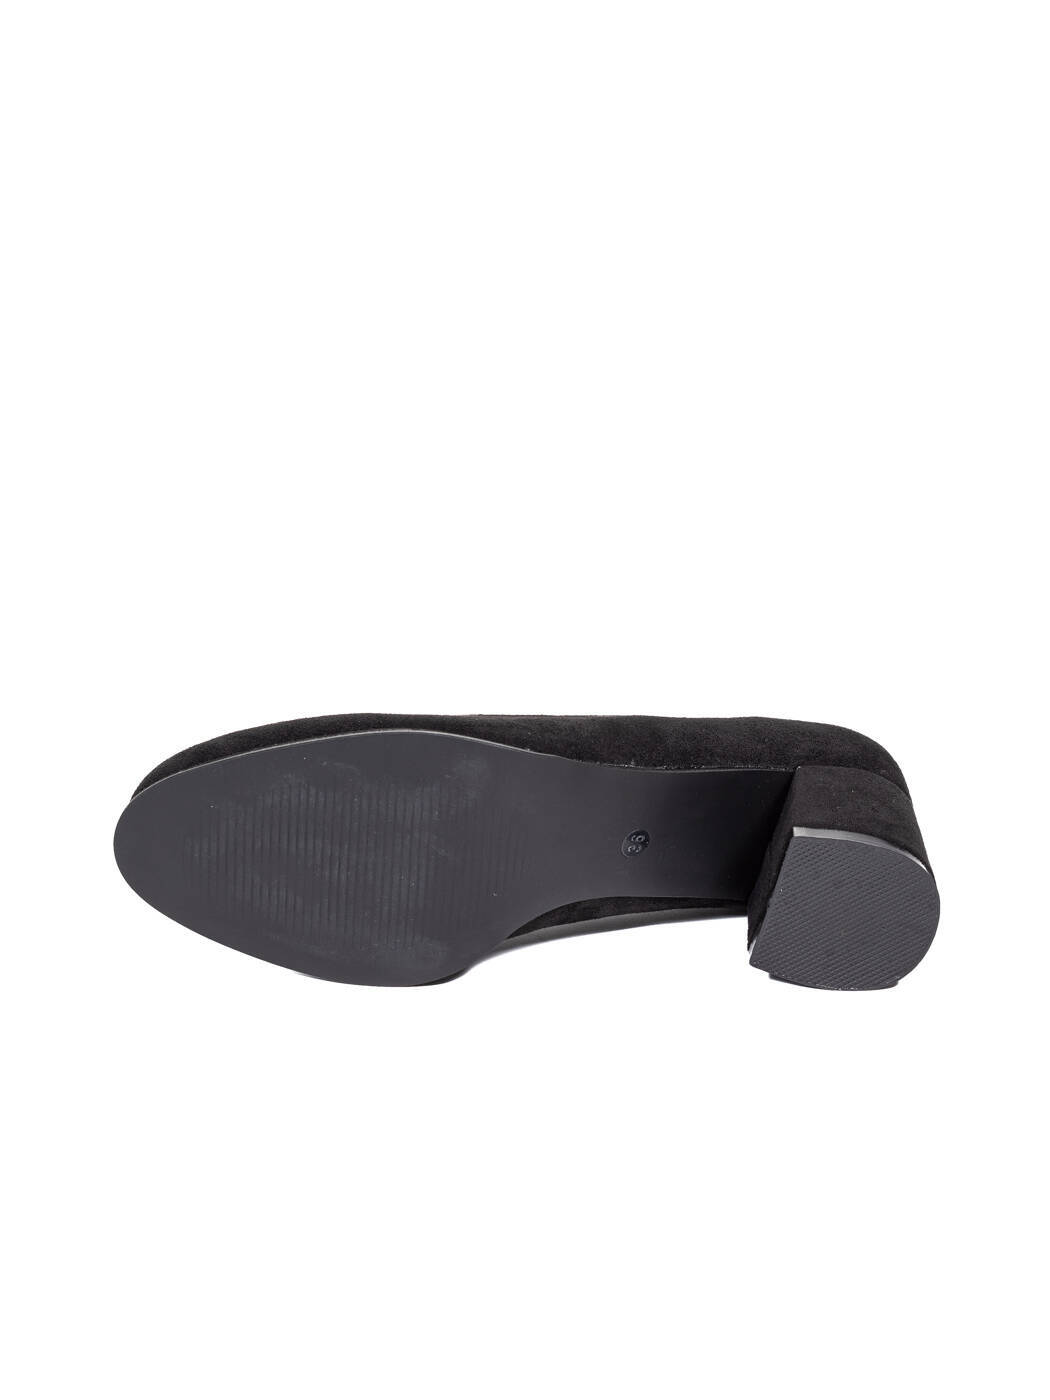 Туфли женские черные экозамша каблук устойчивый демисезон AM вид 0